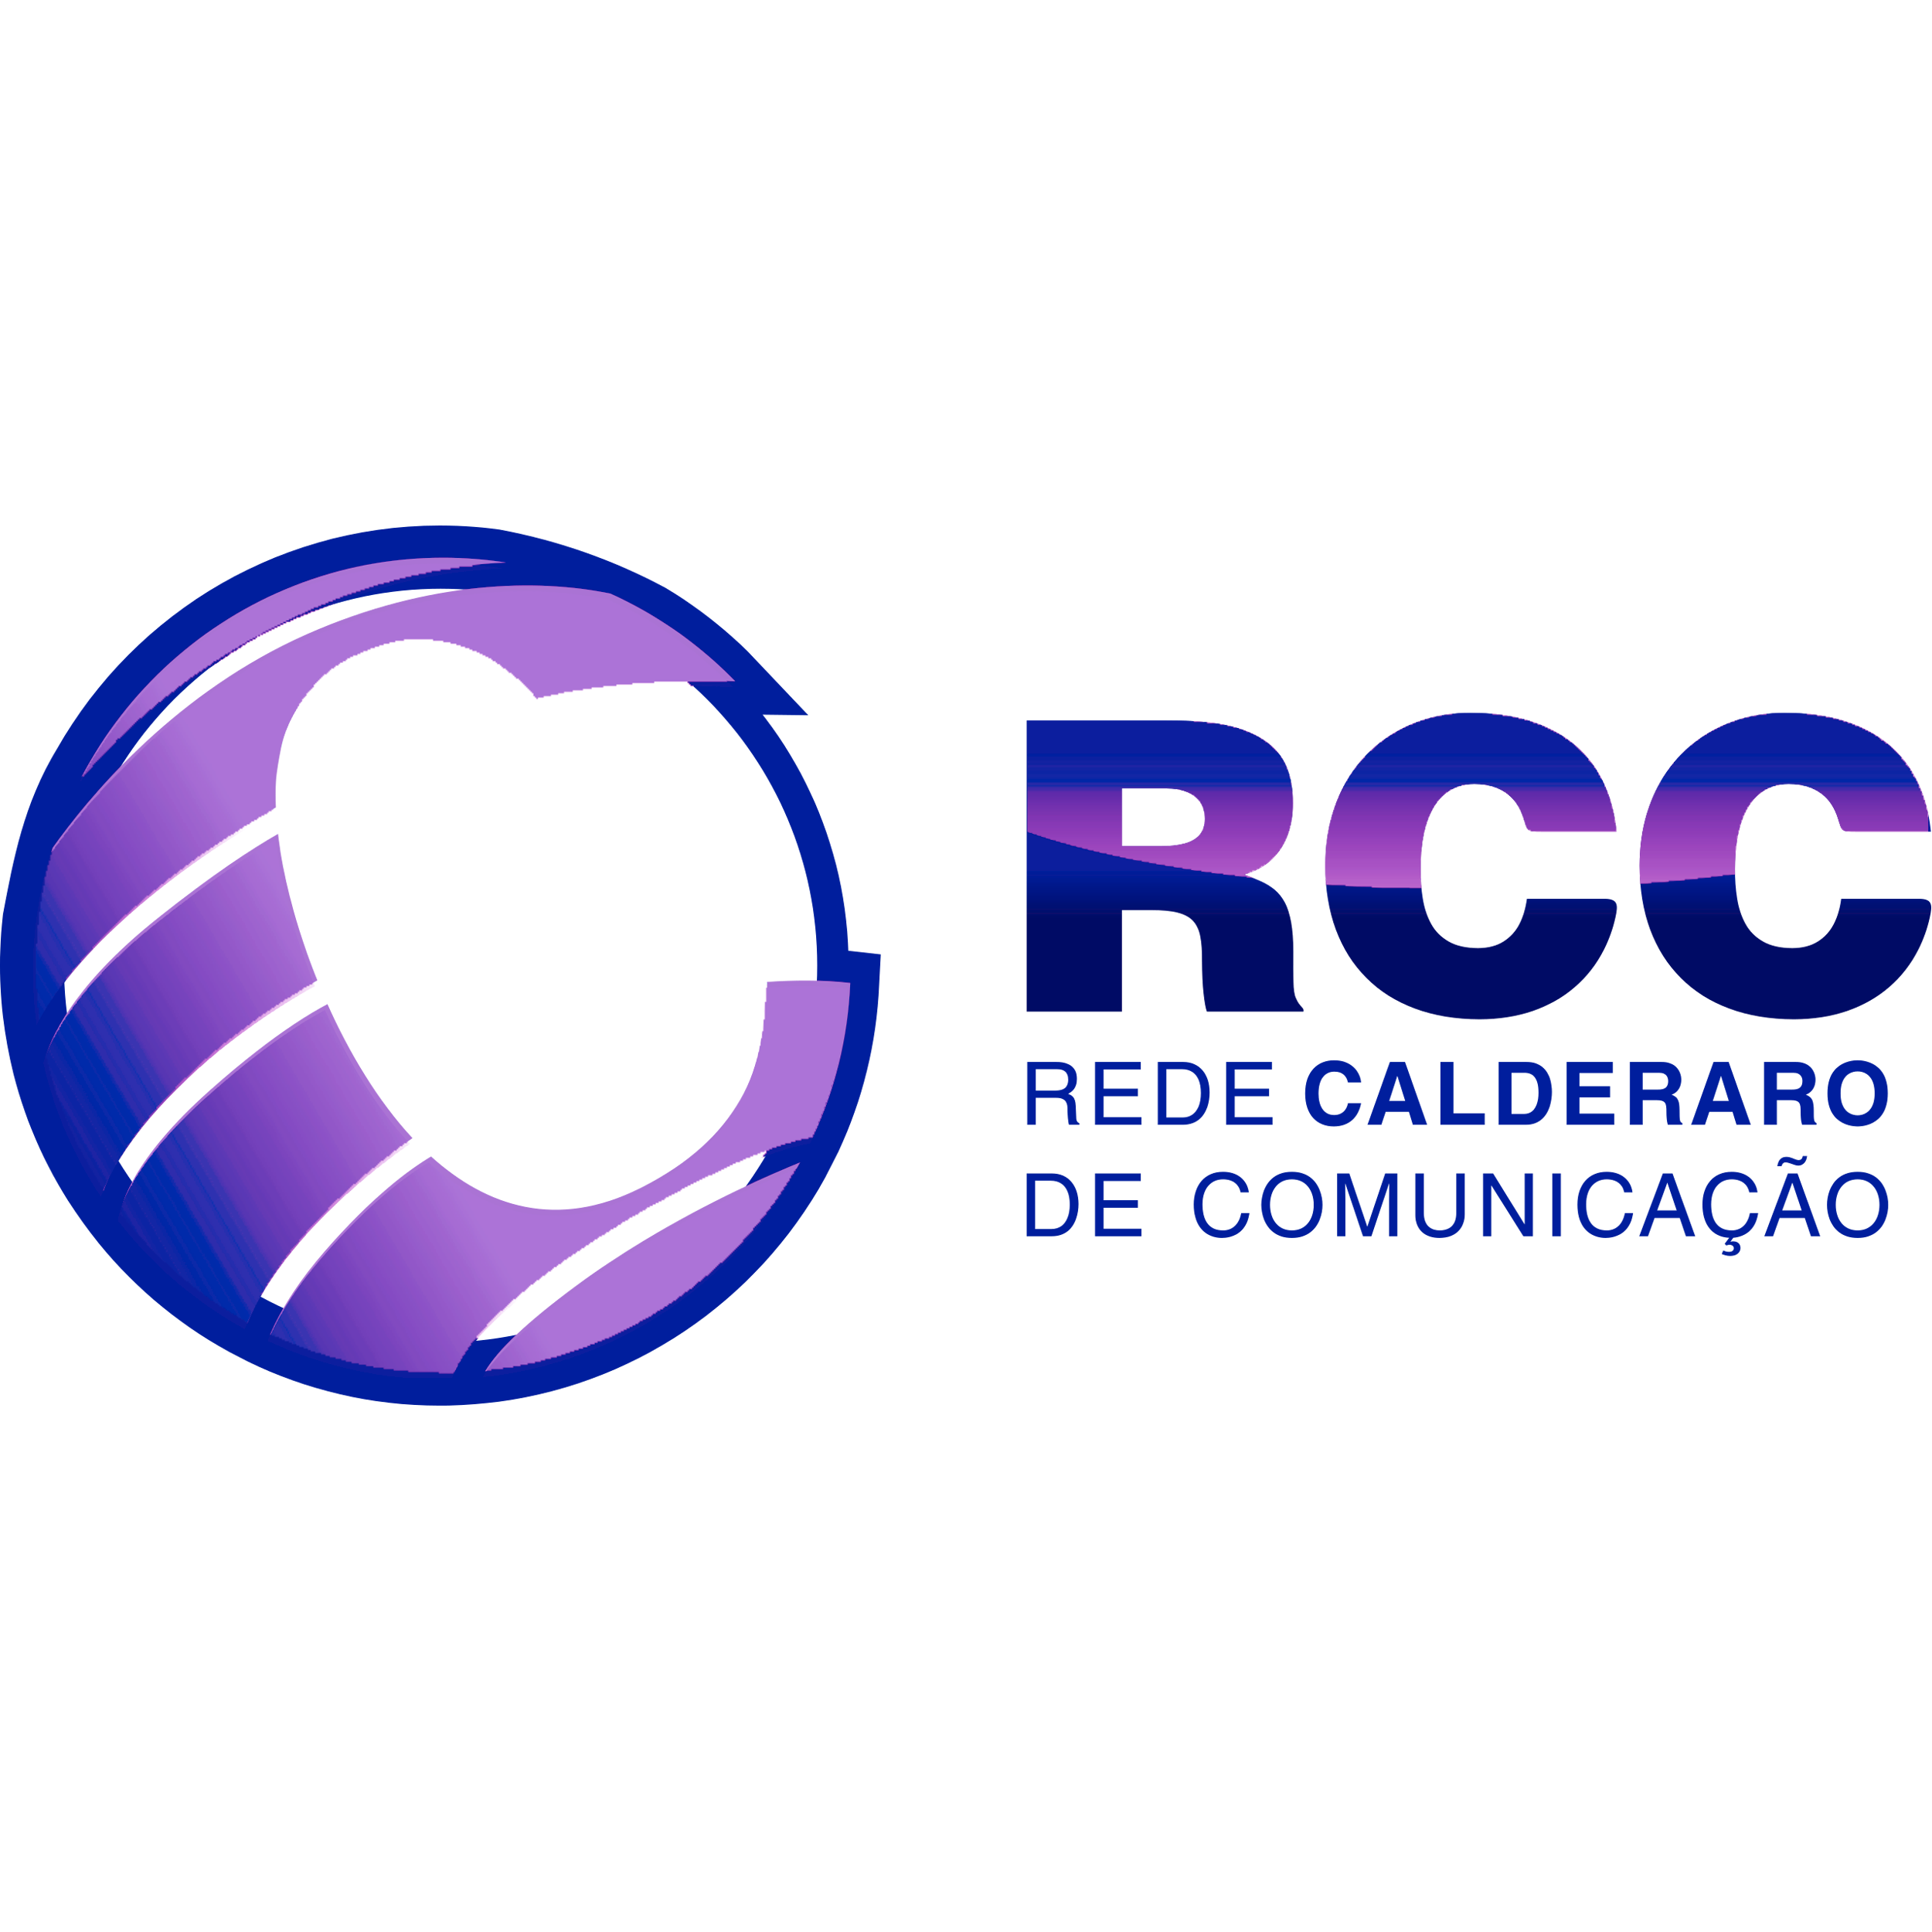 Rede Calderaro De Comunicacao Logo Transparent Gallery